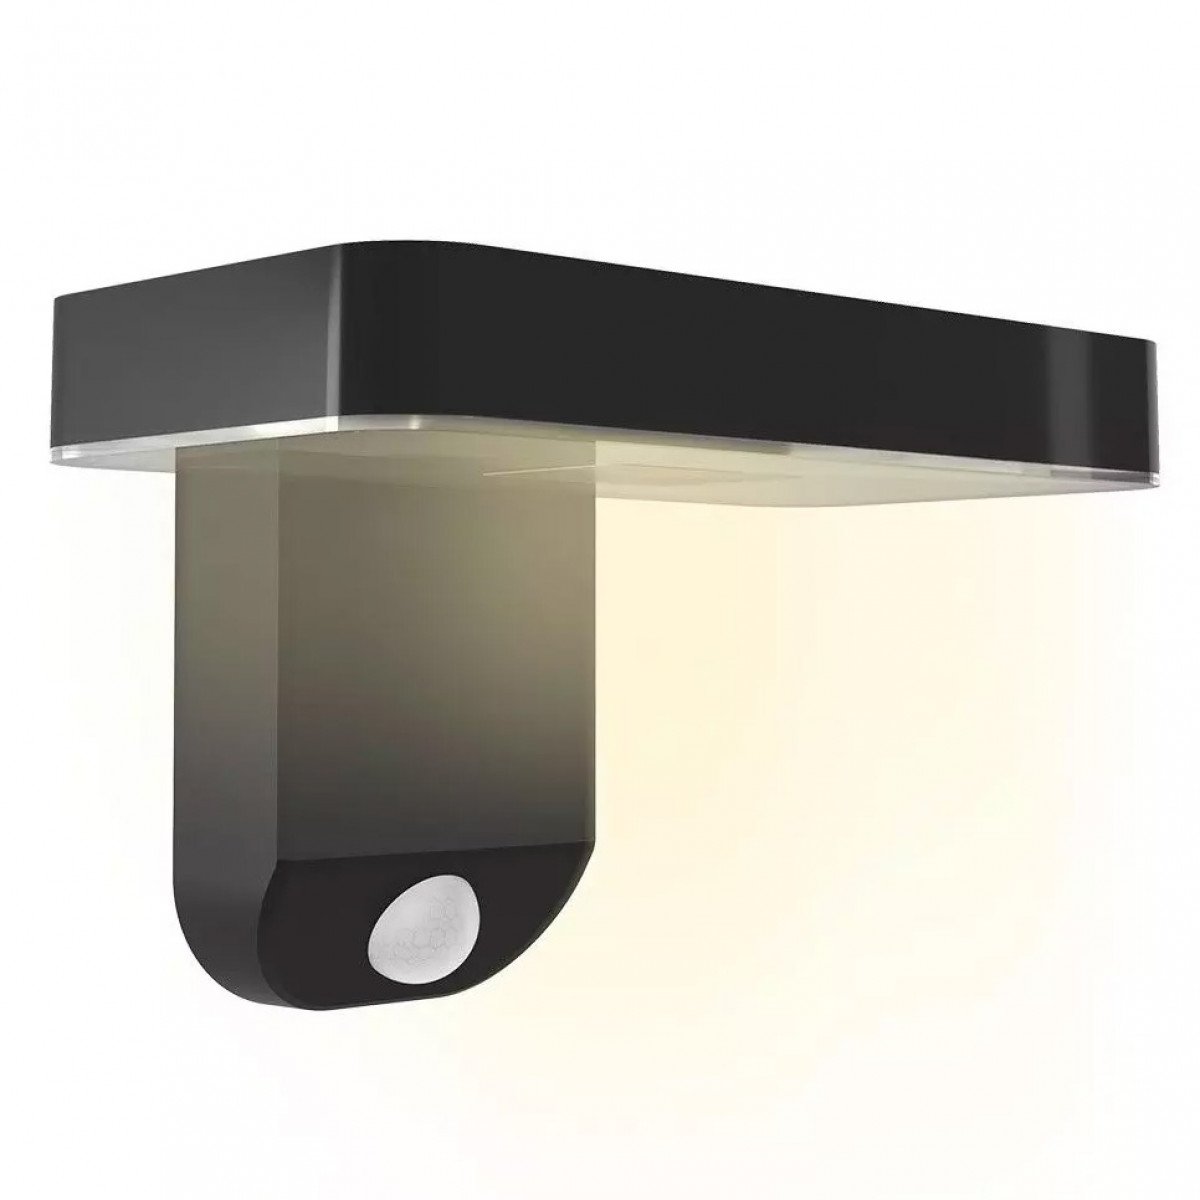 Lampe d'extérieur Calex Smart lampe murale solaire noire avec détecteur de mouvement lampe murale moderne